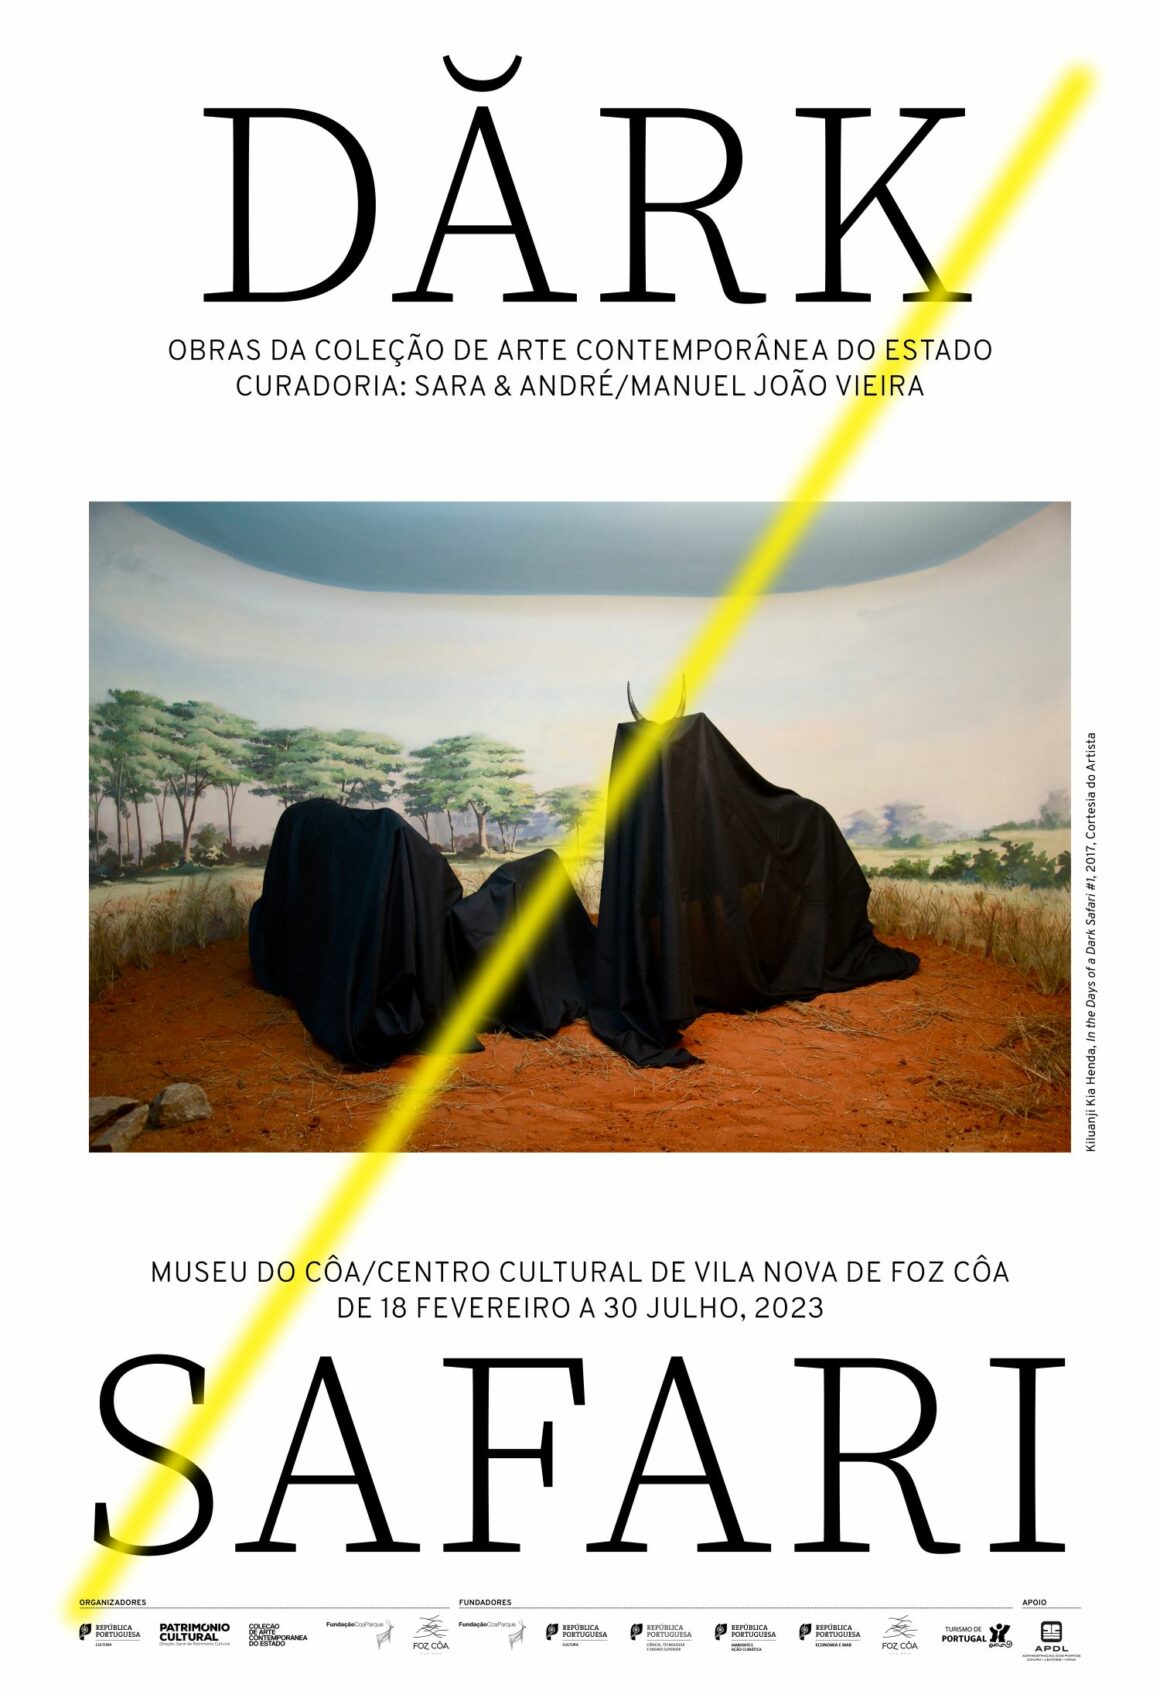 DARK SAFARI – Obras da Coleção de Arte Contemporânea do Estado